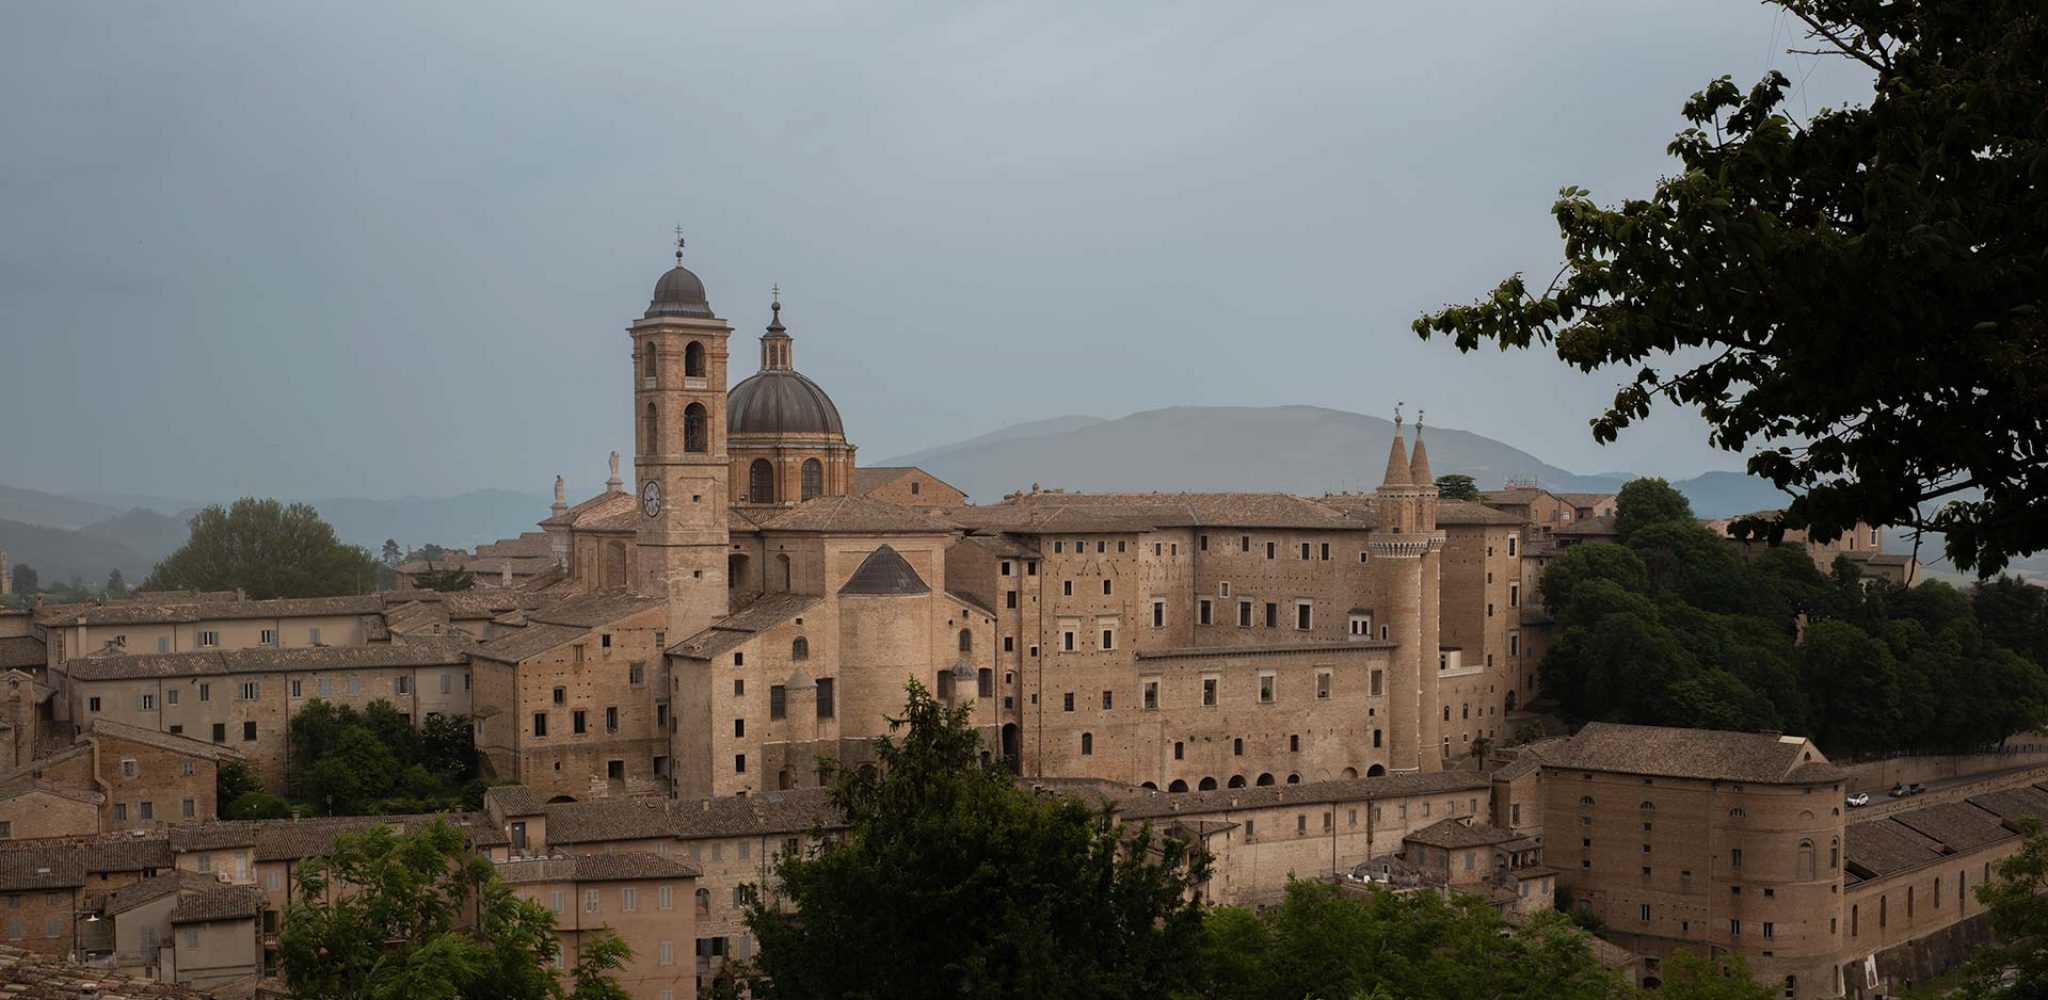 Der Palazzo Ducale von Federico Montefeltro in Urbino vor den Hügeln der Region Marken in Italien.